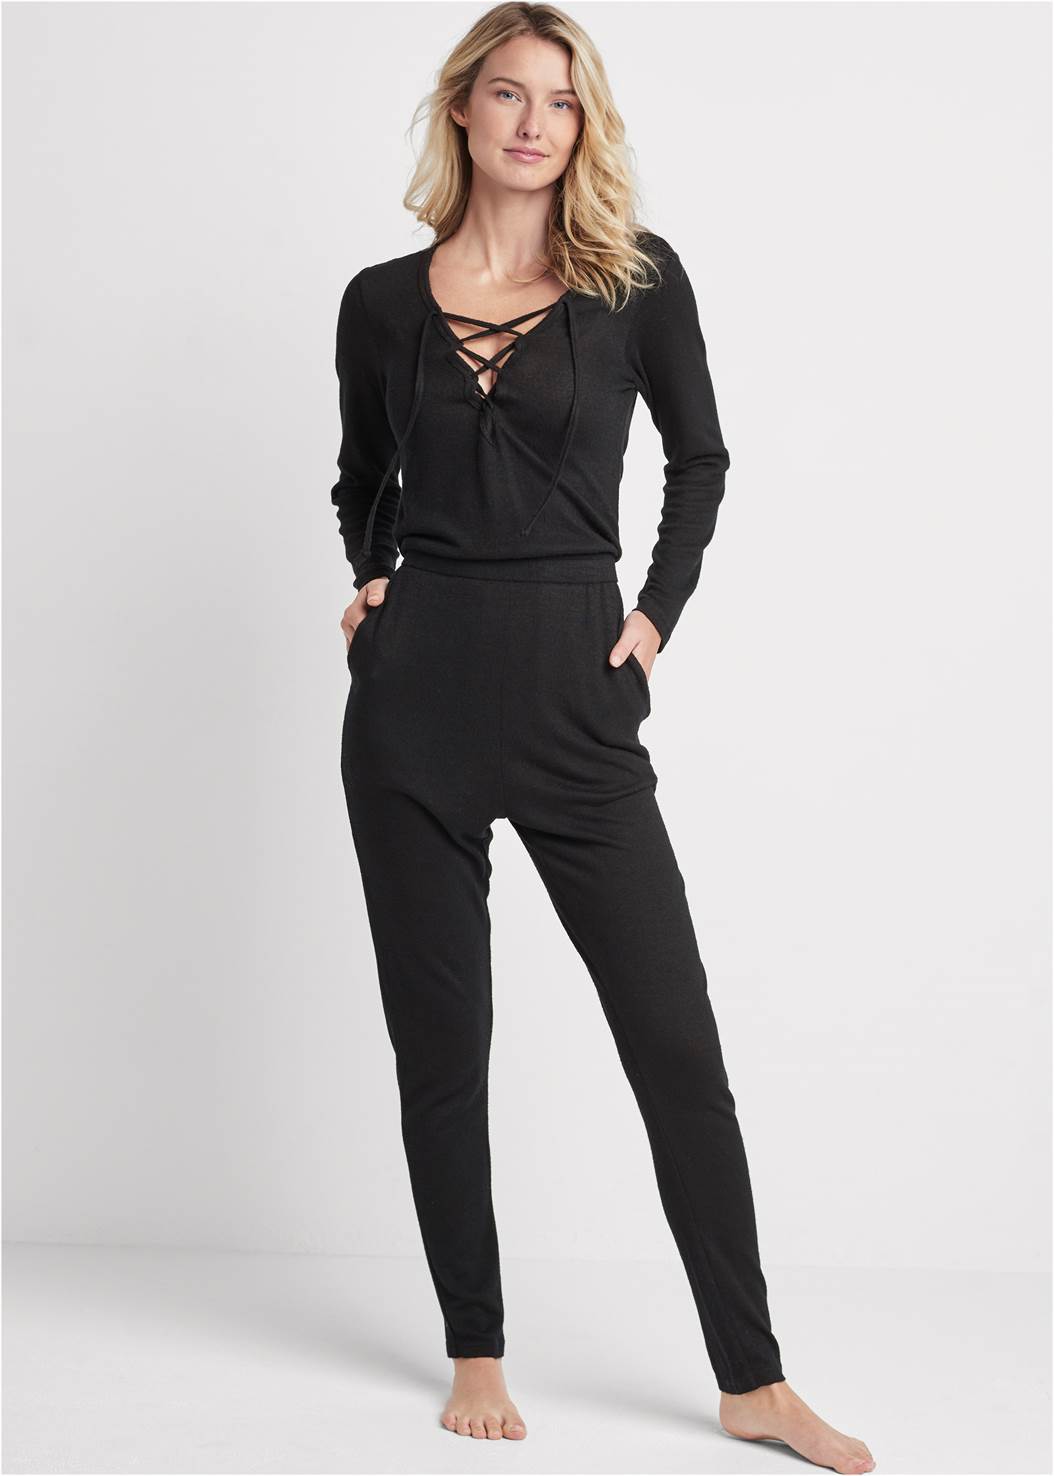 Cozy Hacci Lace-Up Jumpsuit in Black | VENUS